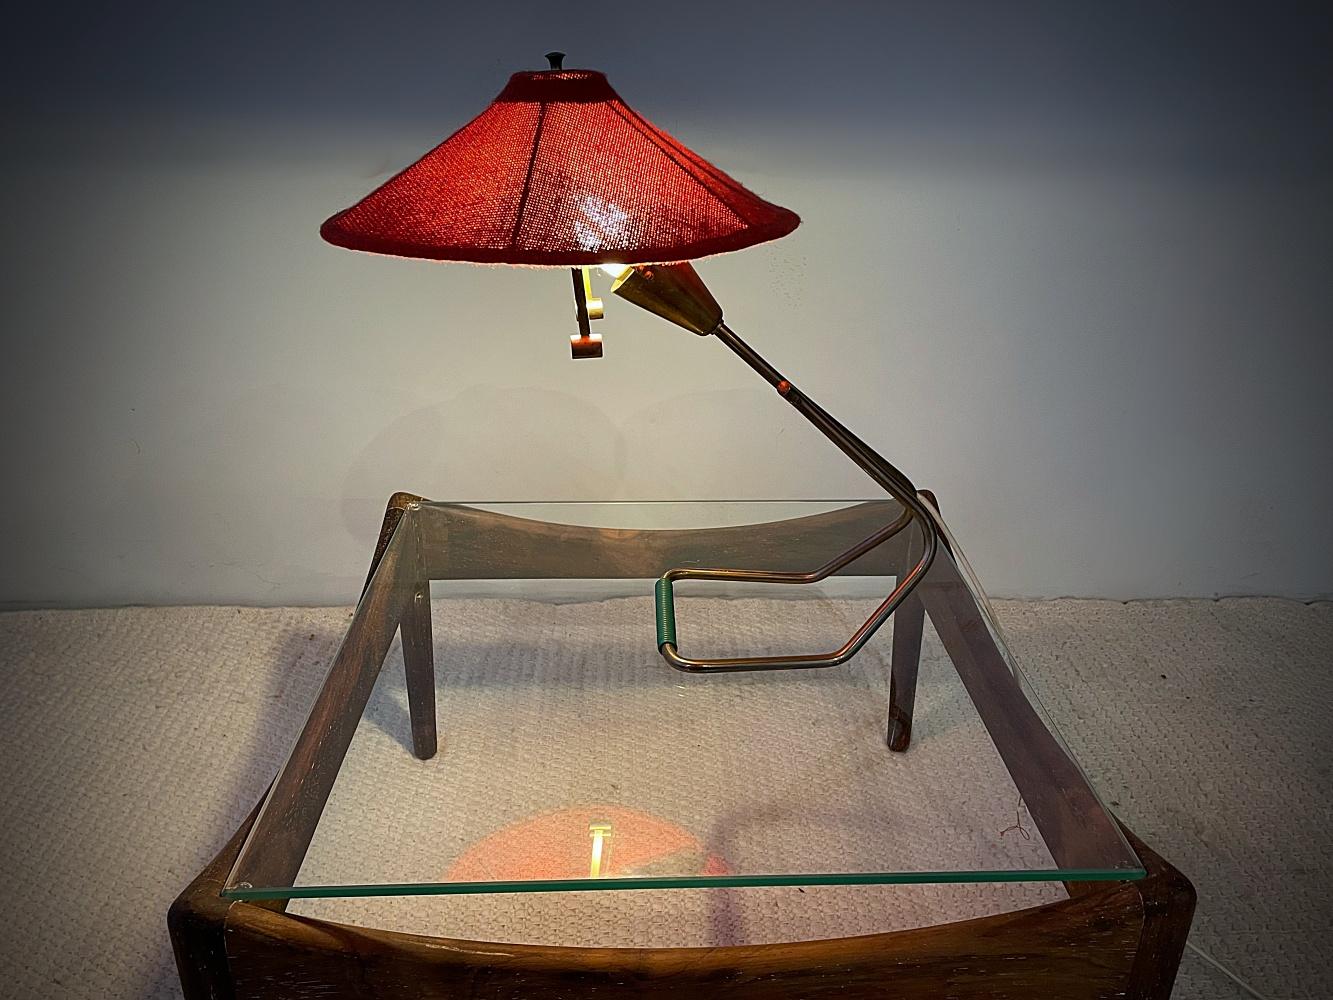 Ikonische Schreibtischlampe aus der Mitte des Jahrhunderts mit schönen Messingdetails. Minimalistisches Design aus den 1950er Jahren - verstellbarer großer runder roter Stoffschirm. Der Schirm sorgt für ein gleichmäßiges, großflächiges Licht. Schöne